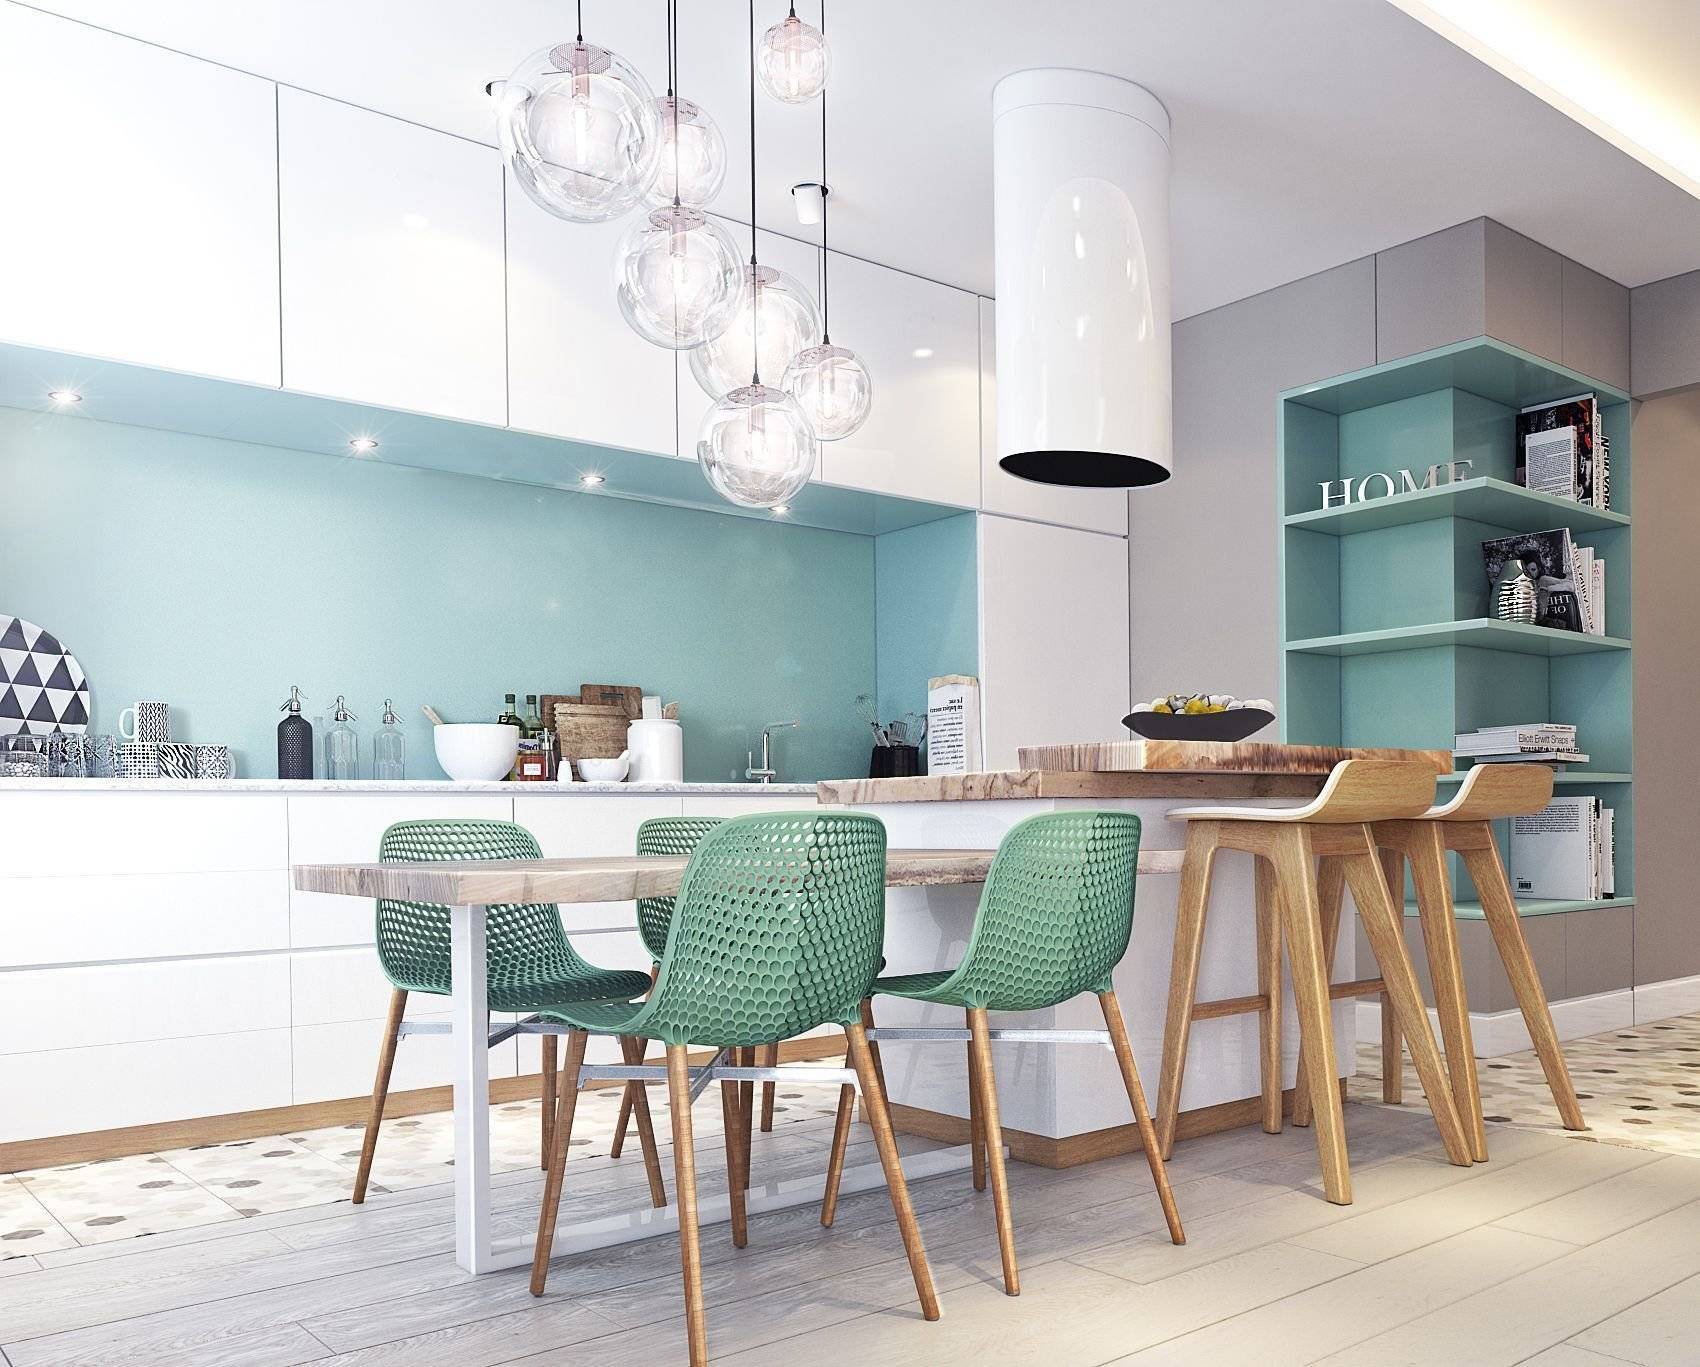 Дизайн квартир 2020 года: 140 фото красивых трендов интерьера